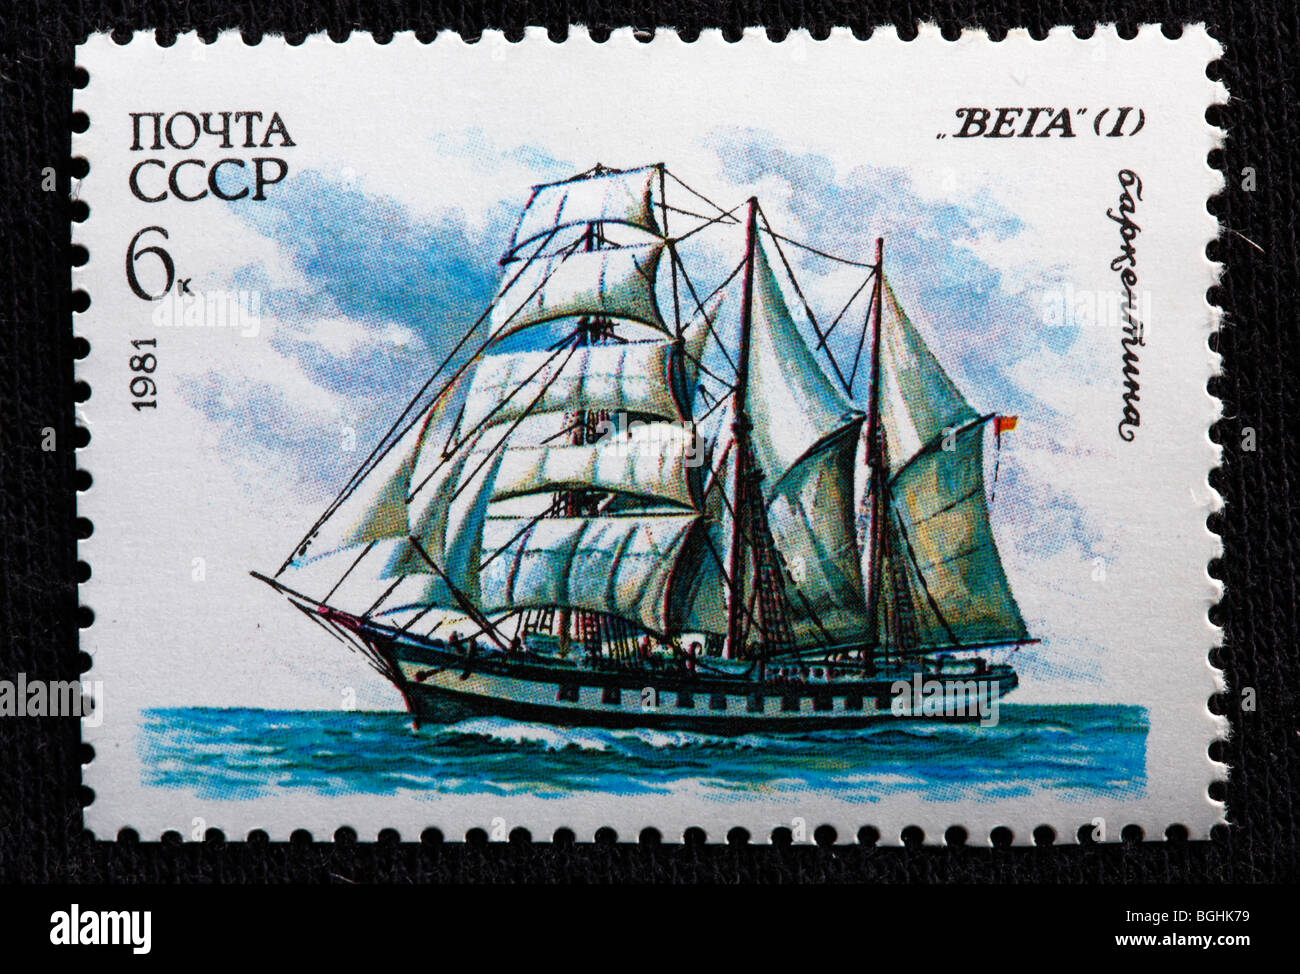 Russische Segeln Brigantine "Vega", Briefmarke, UdSSR, 1981 Stockfoto